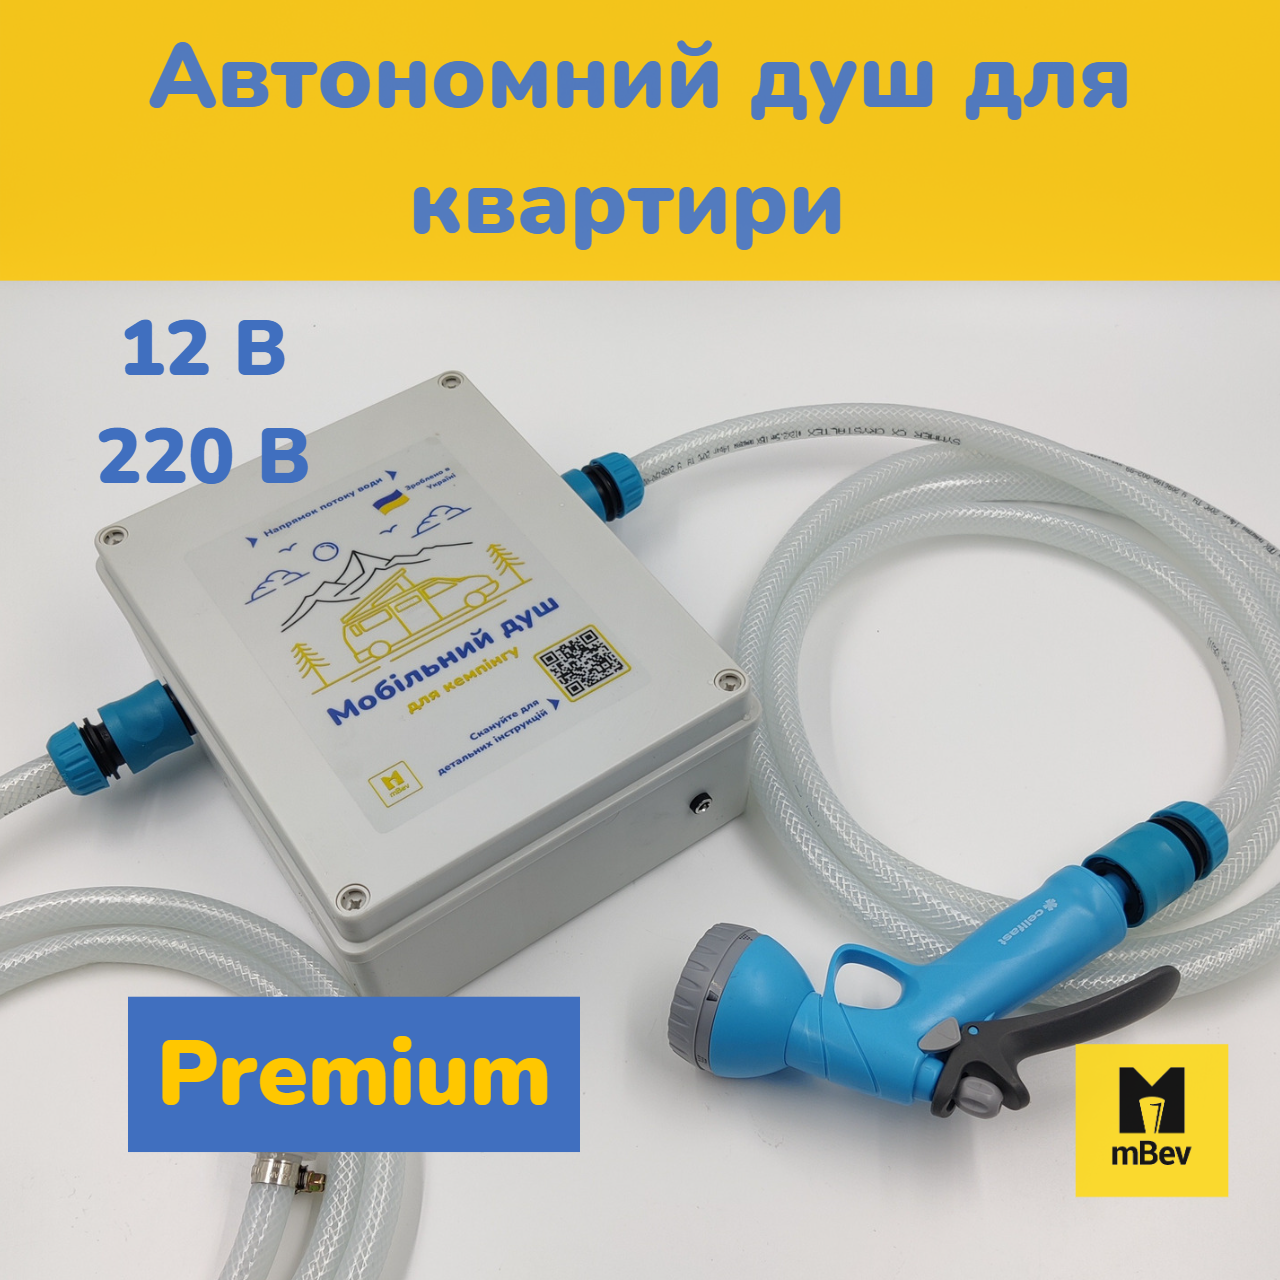 Автономний портативний душ  з насосом для квартири від акумулятора 12В / від мережи 220В, PREMIUM, mBev, Україна.